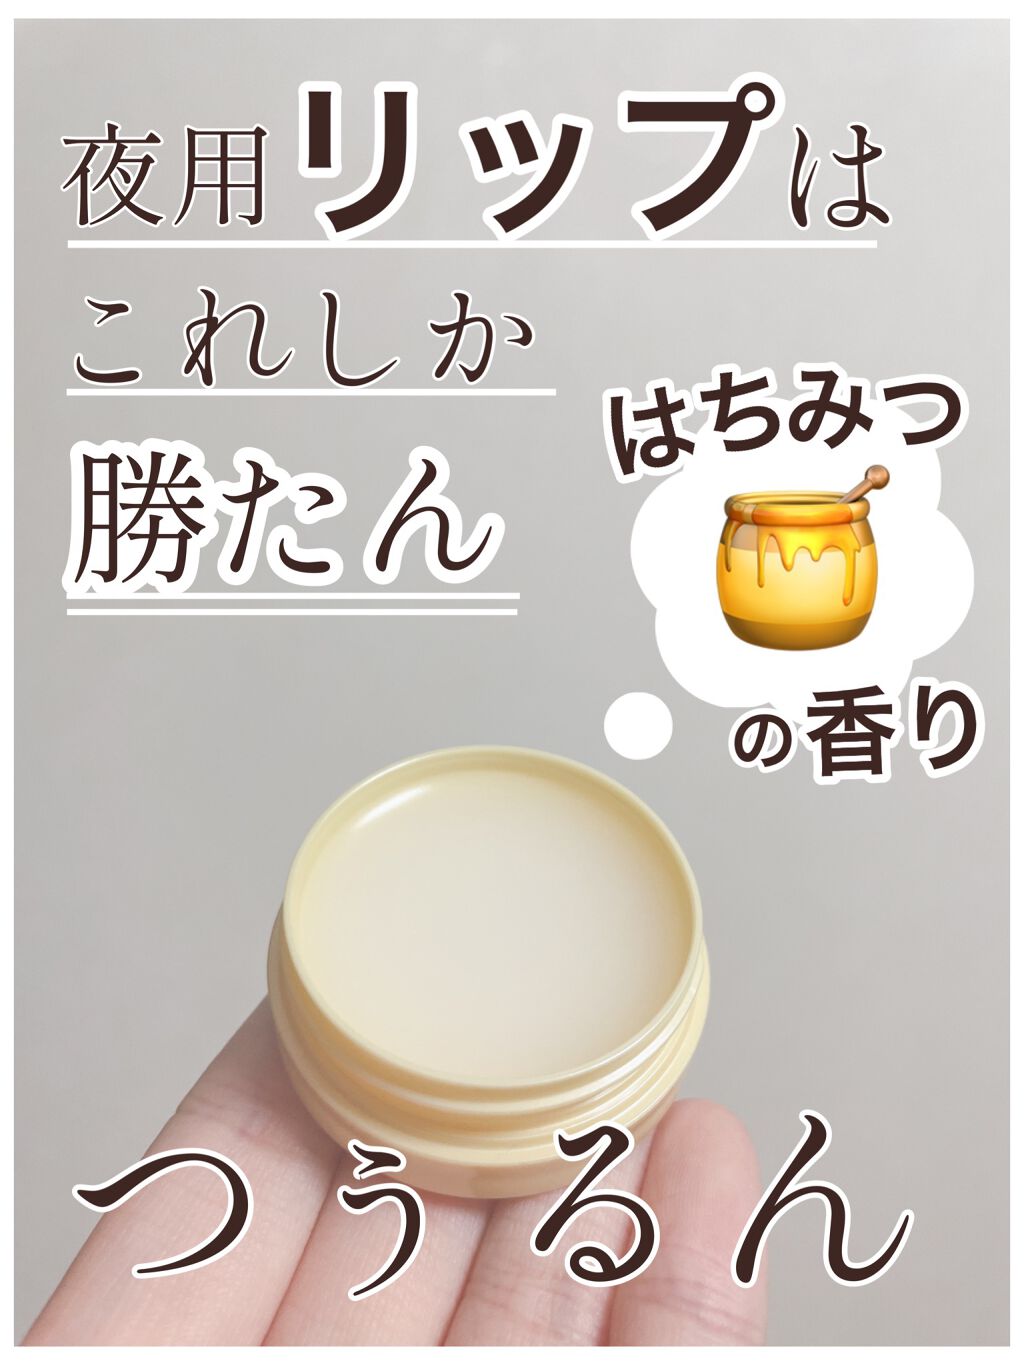 ニベア ディープモイスチャー ナイトプロテクト はちみつの香り / ニベア(Nivea) | LIPS